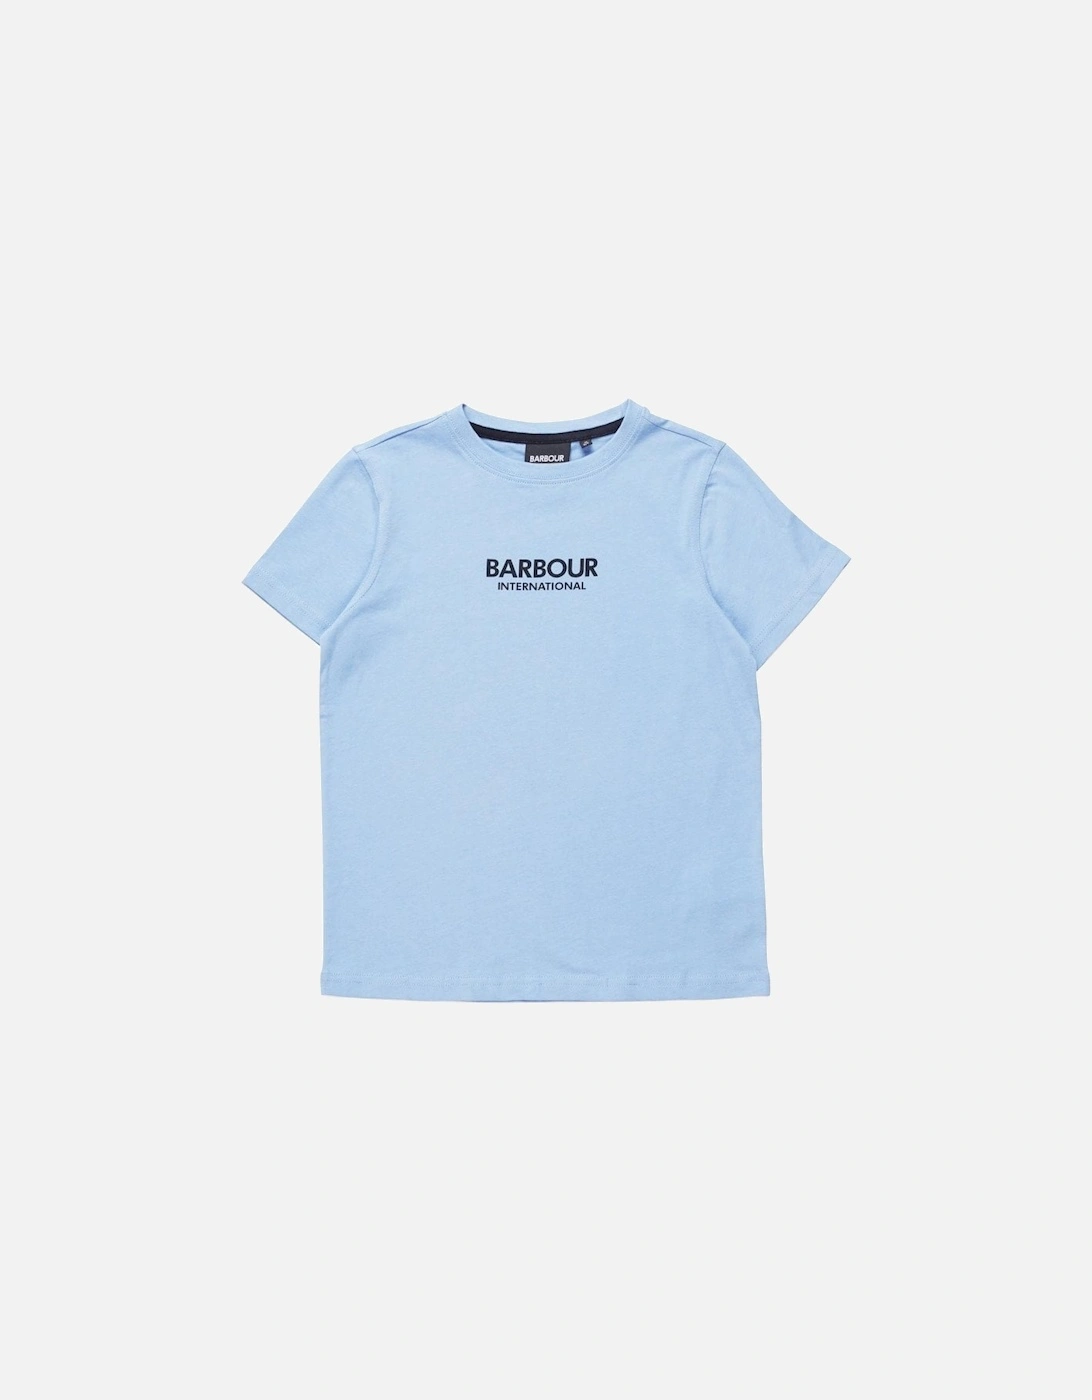 Boy's Blue Formular T-shirt., 2 of 1